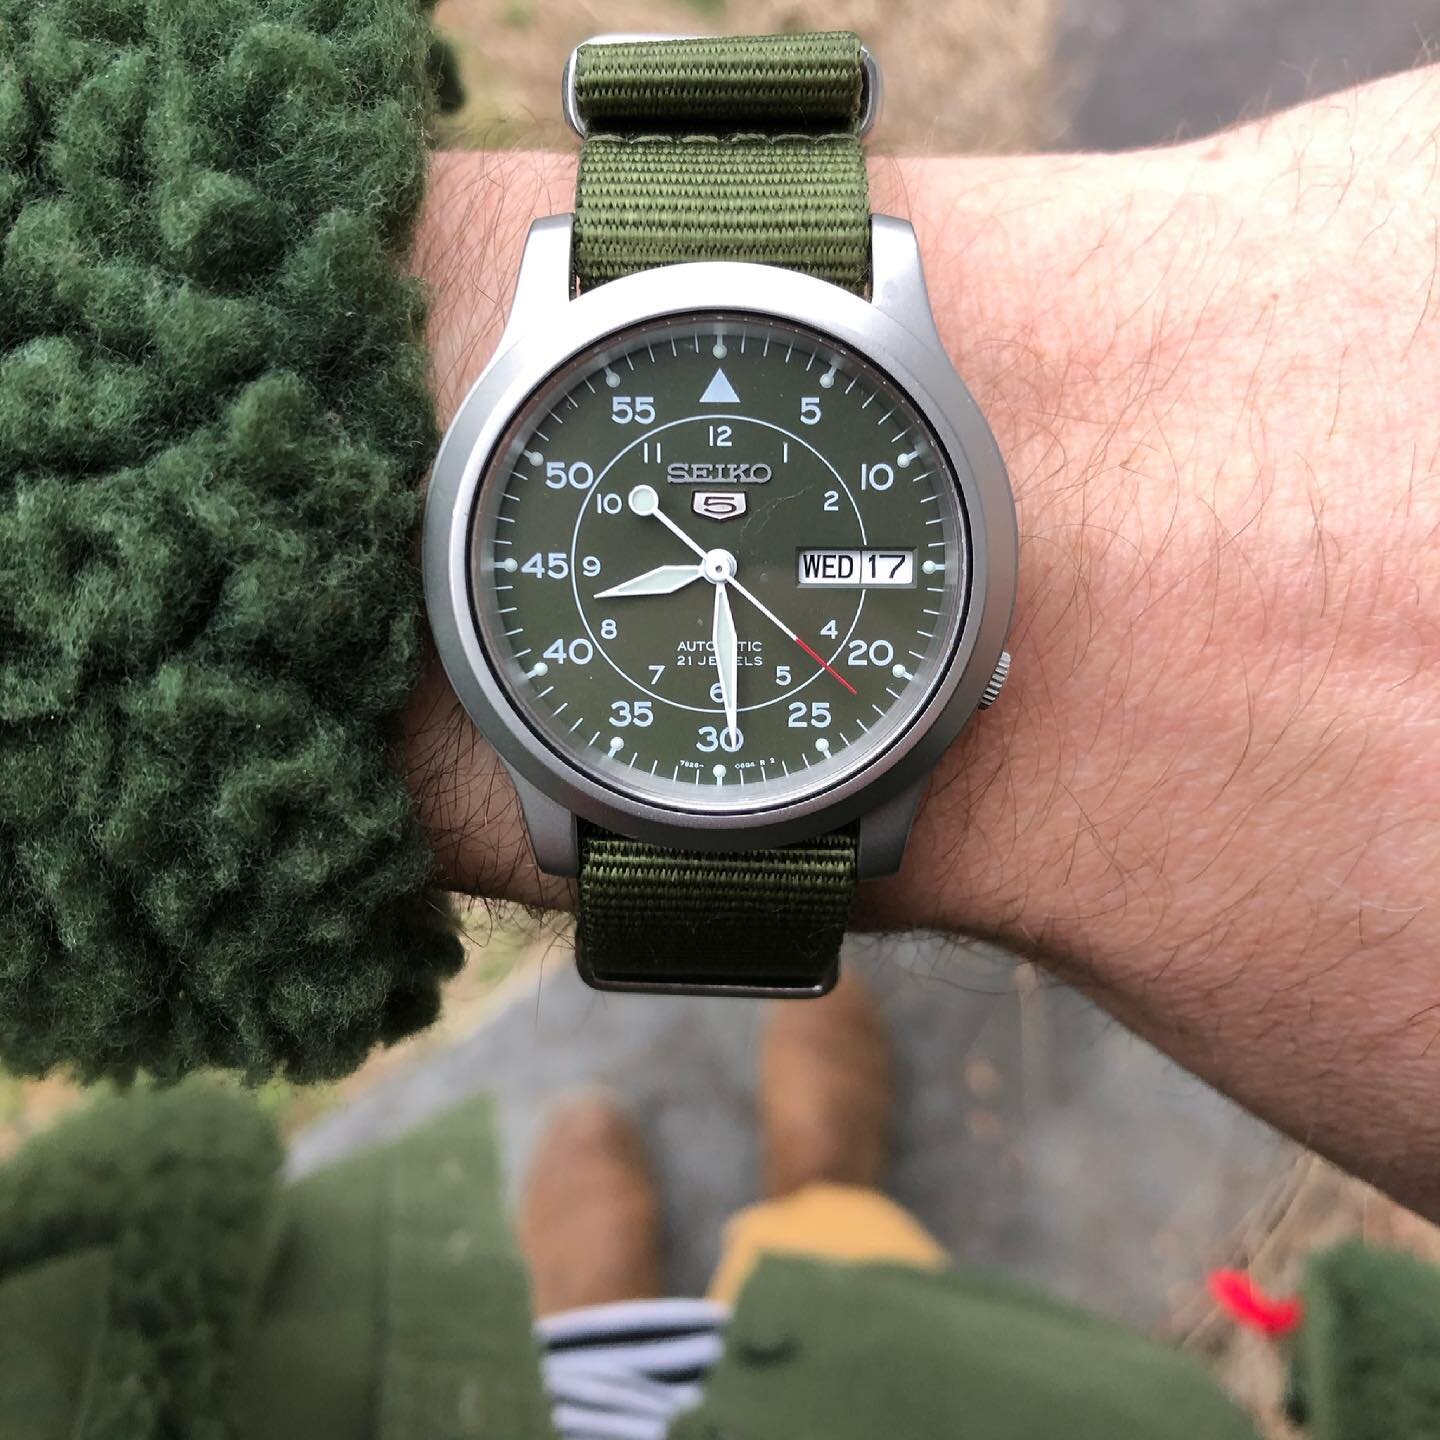 Luckily, I&rsquo;ve gotta green dial watch. #happystpatricksday 
 
#seiko #seiko5 #seikosnk #snk805 #snk809 #womw #watchfam #natostrap #natostraps #teamtopo